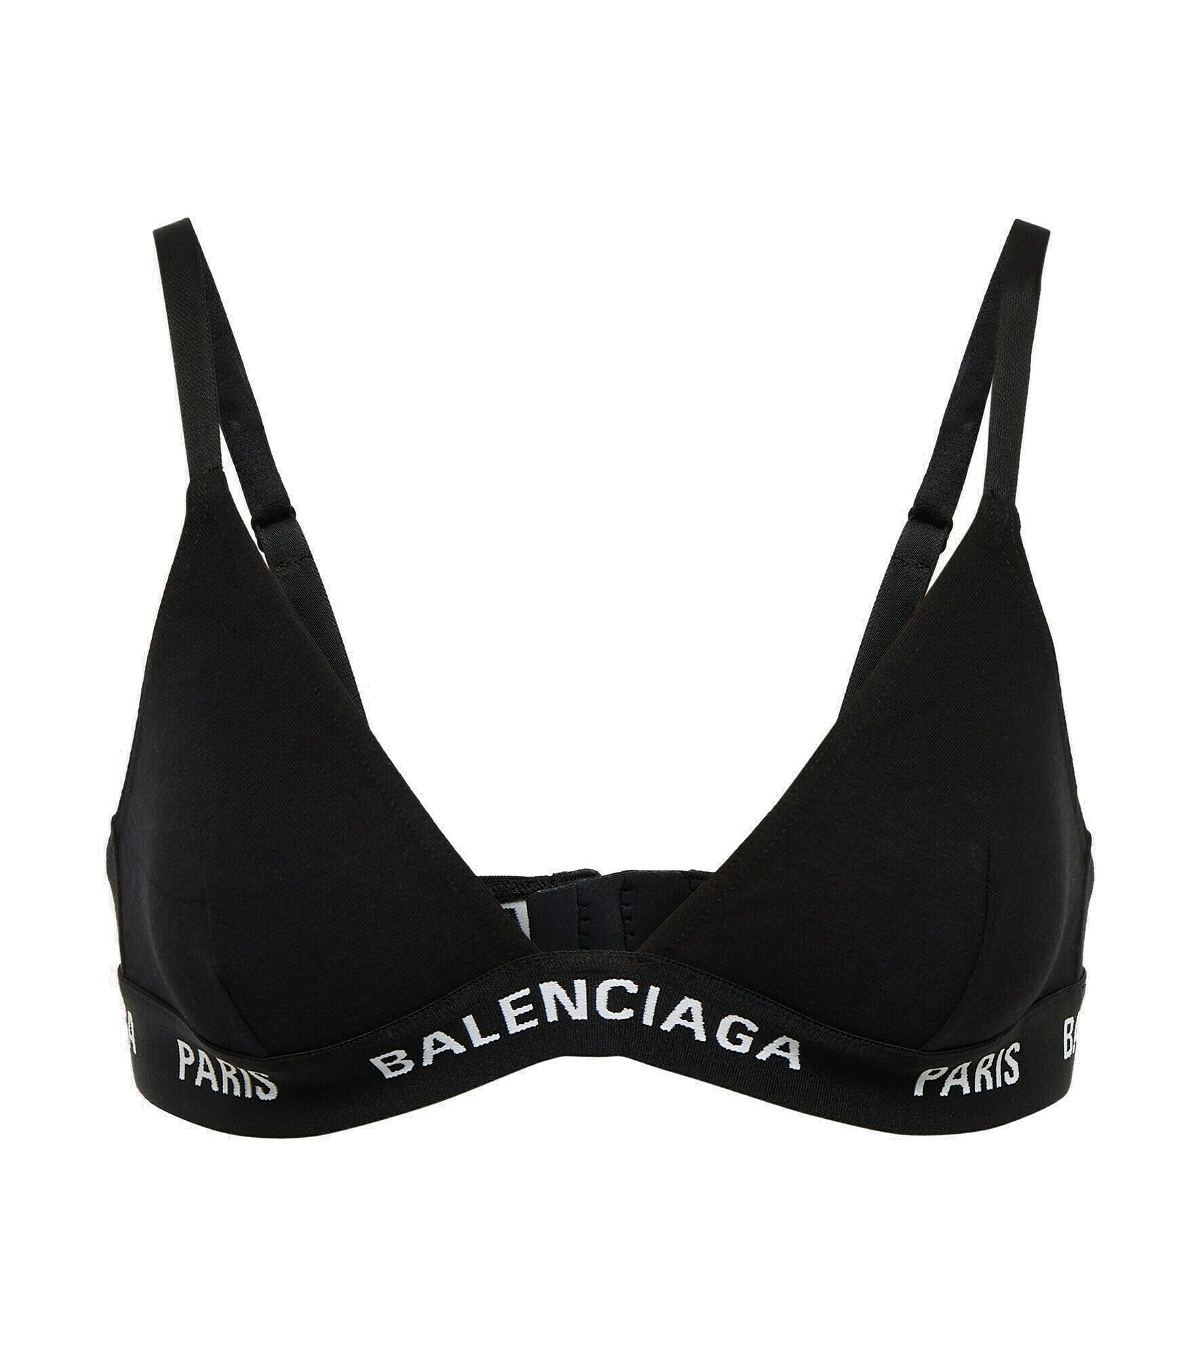 Balenciaga - Paris logo jacquard bra Balenciaga